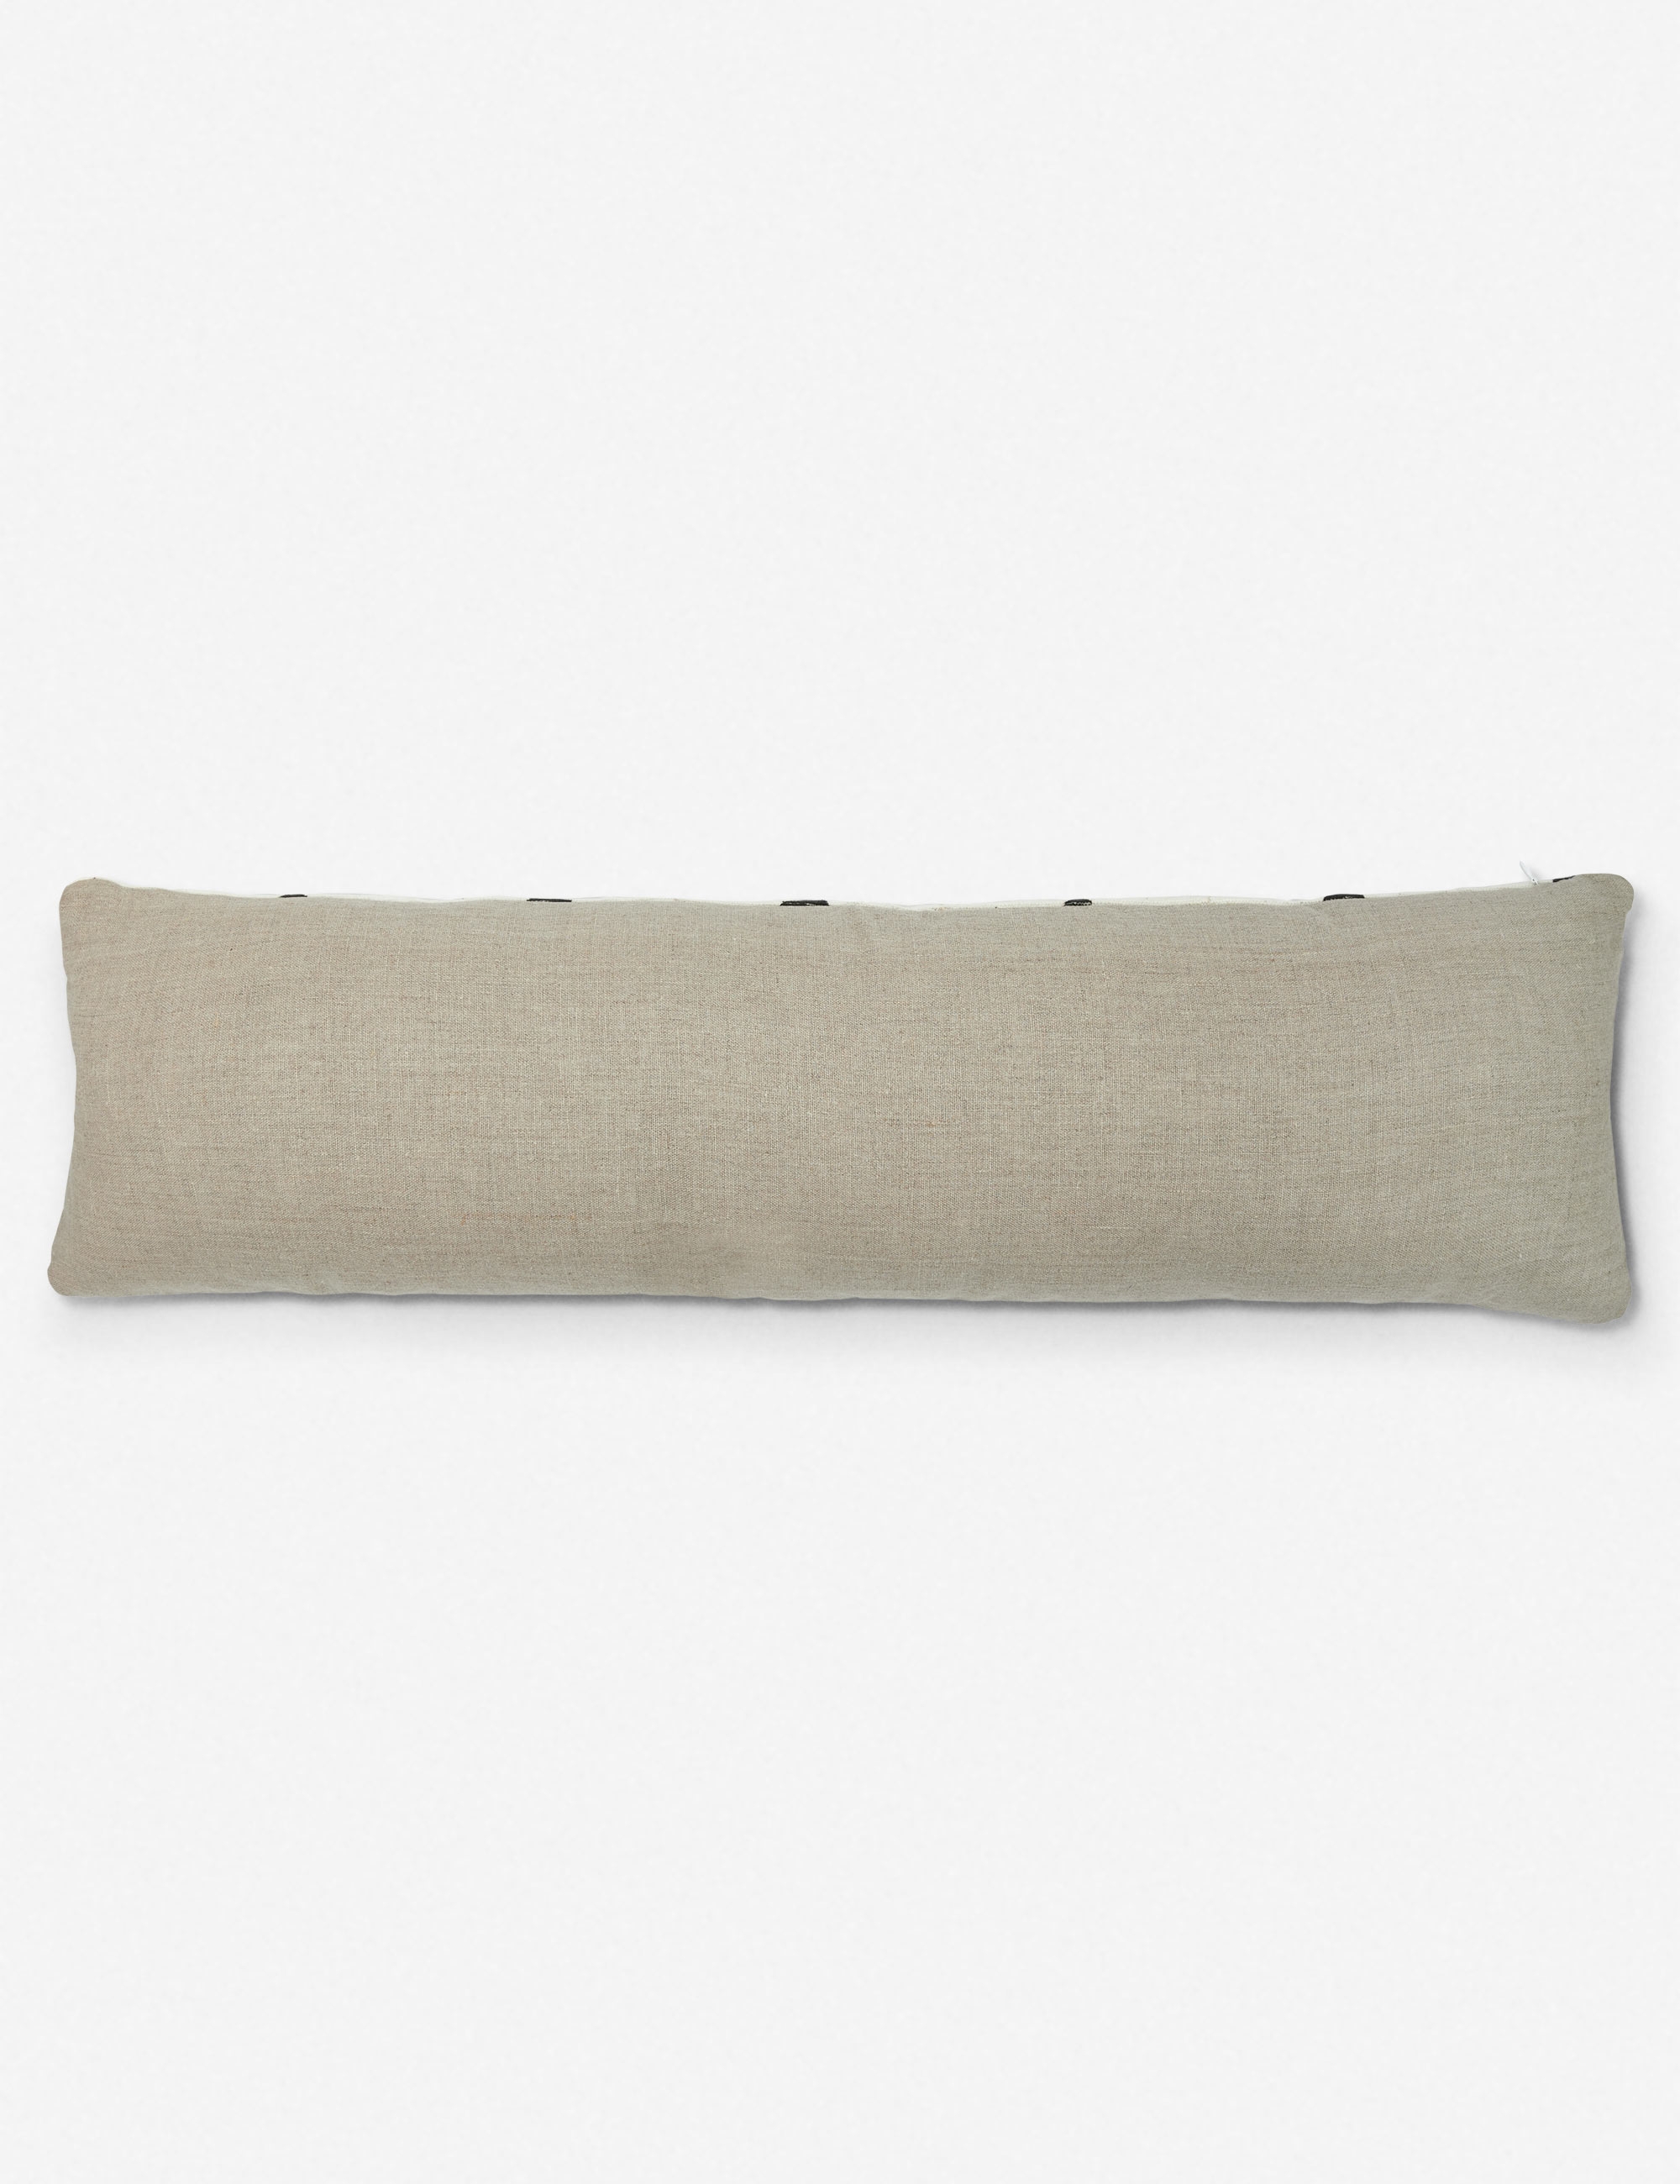 Efuru One of a Kind Mudcloth Lumbar Pillow - Image 3